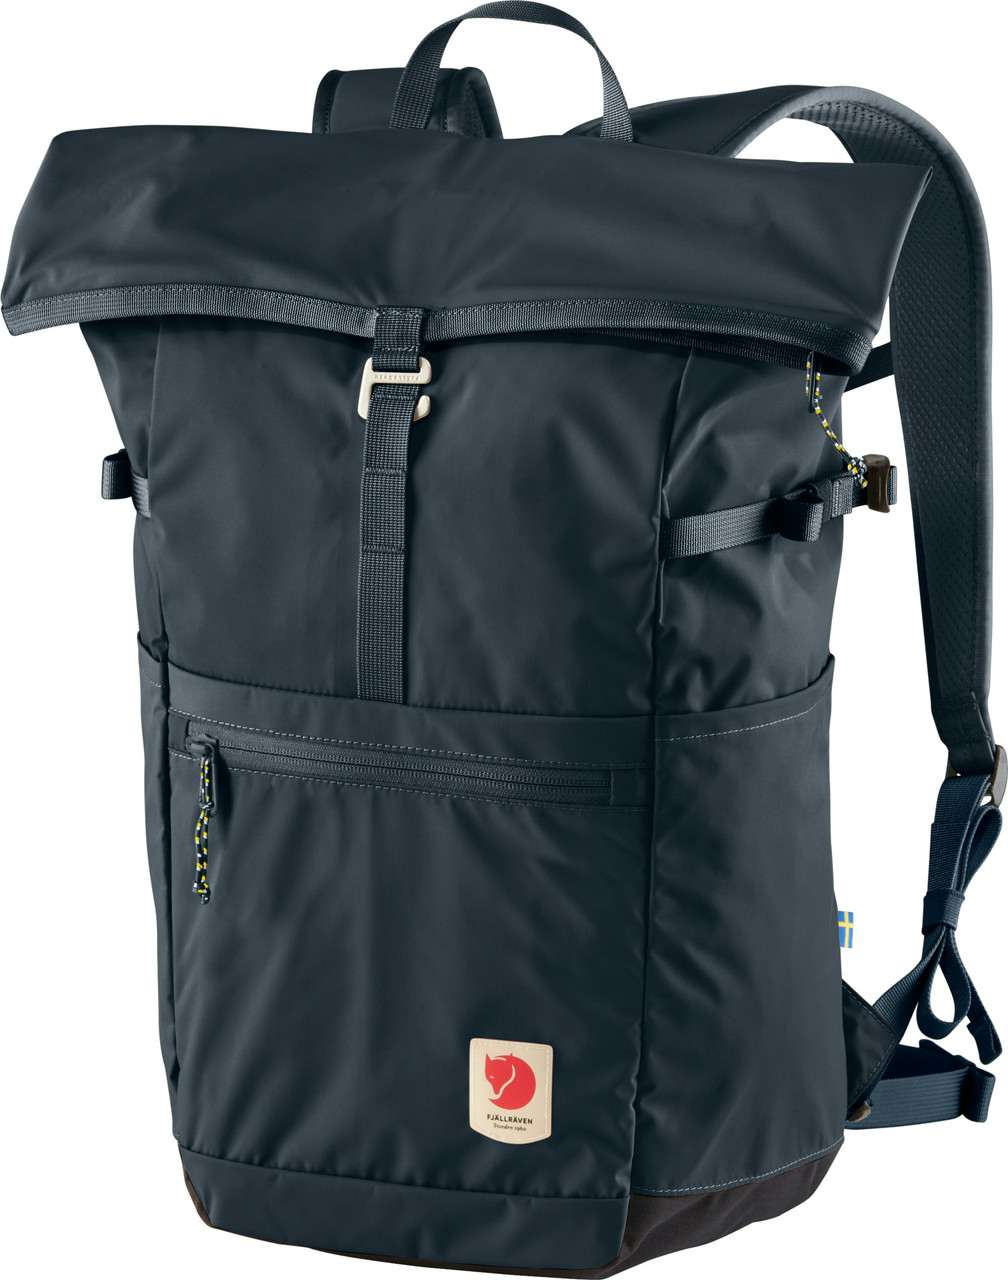 High Coast Foldsack 24 Backpack Navy